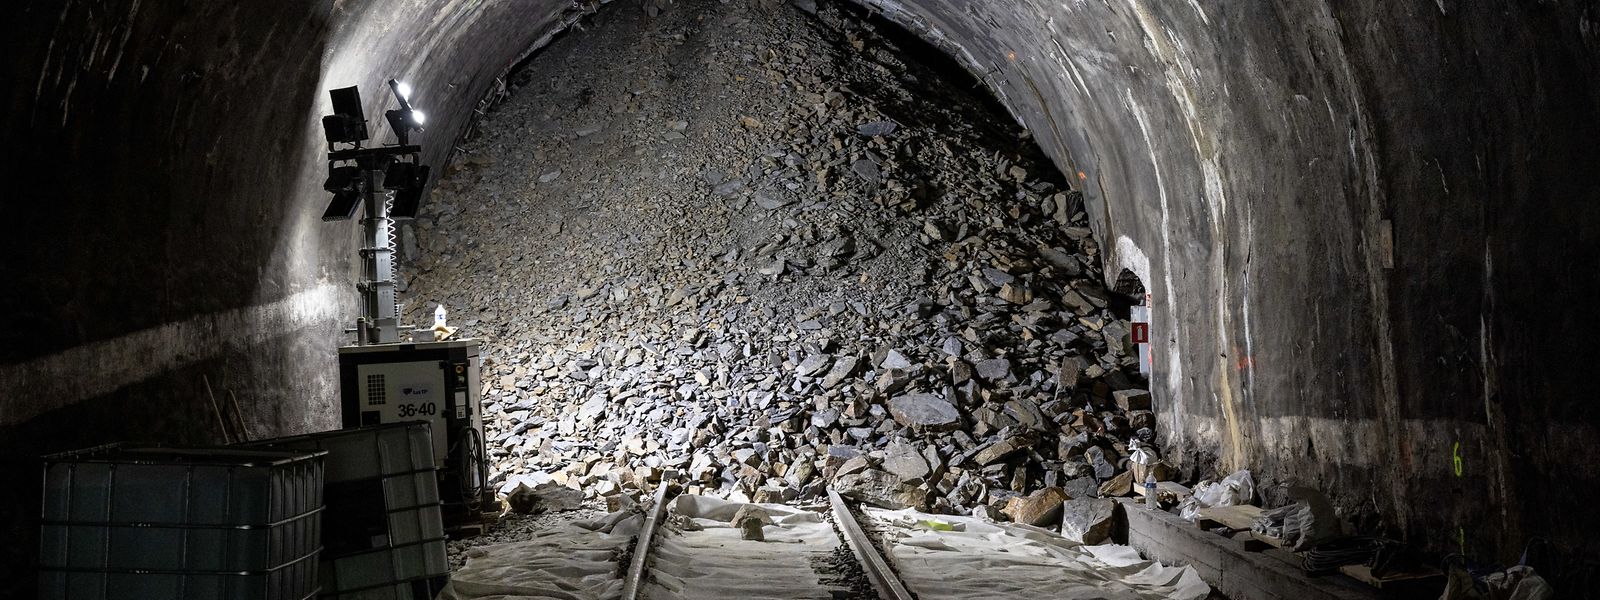 L'effondrement dans le tunnel Schieburg s'est produit le samedi 27 août 2022, pendant une période de travaux.